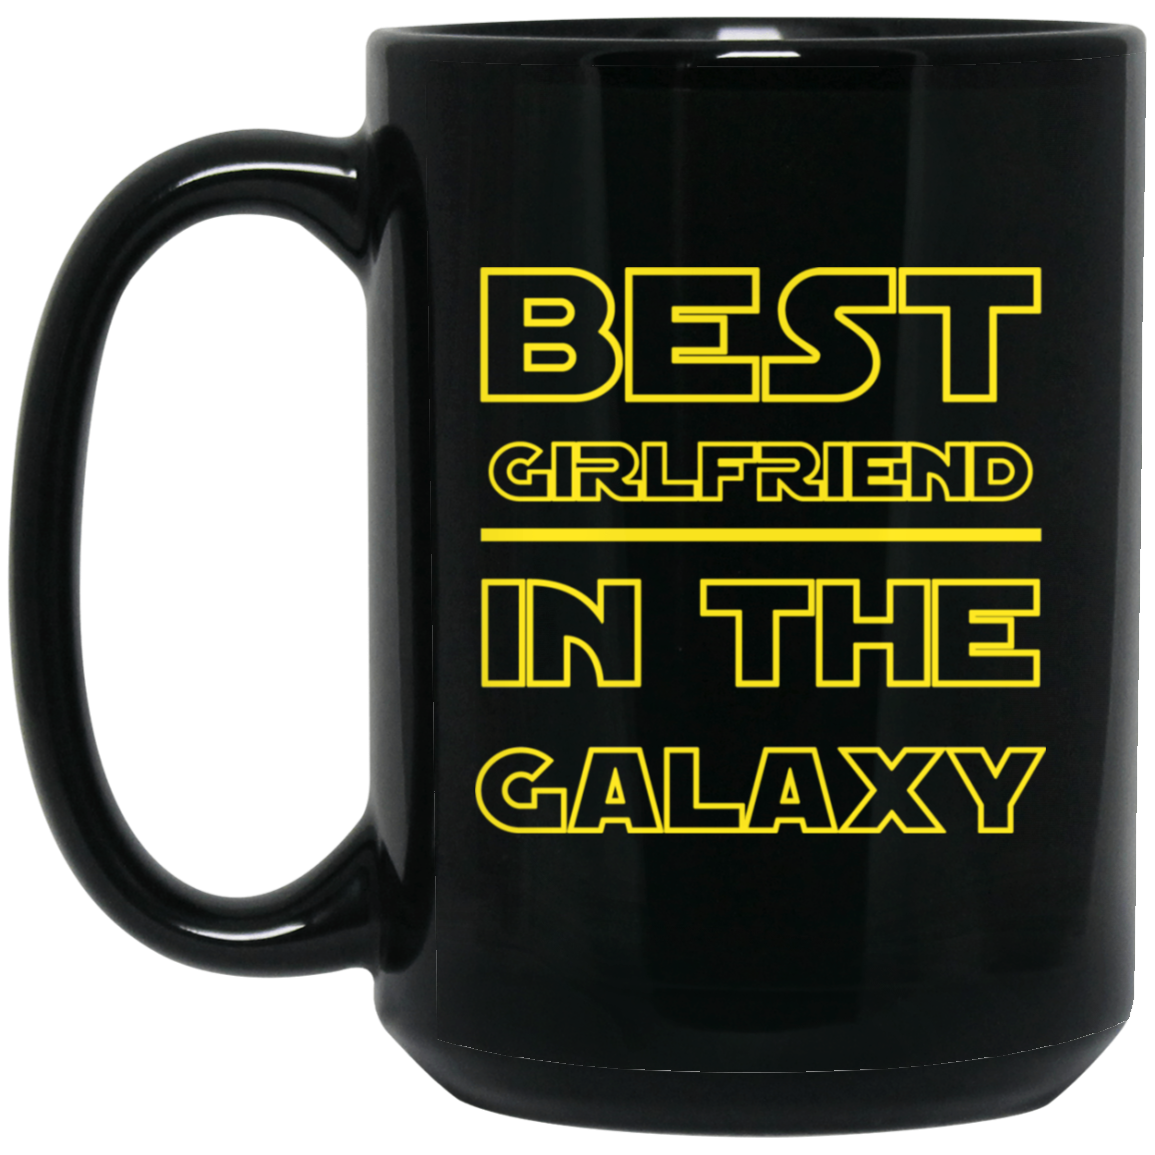 Best Girlfriend In The Galaxy 15 oz. Black Mug